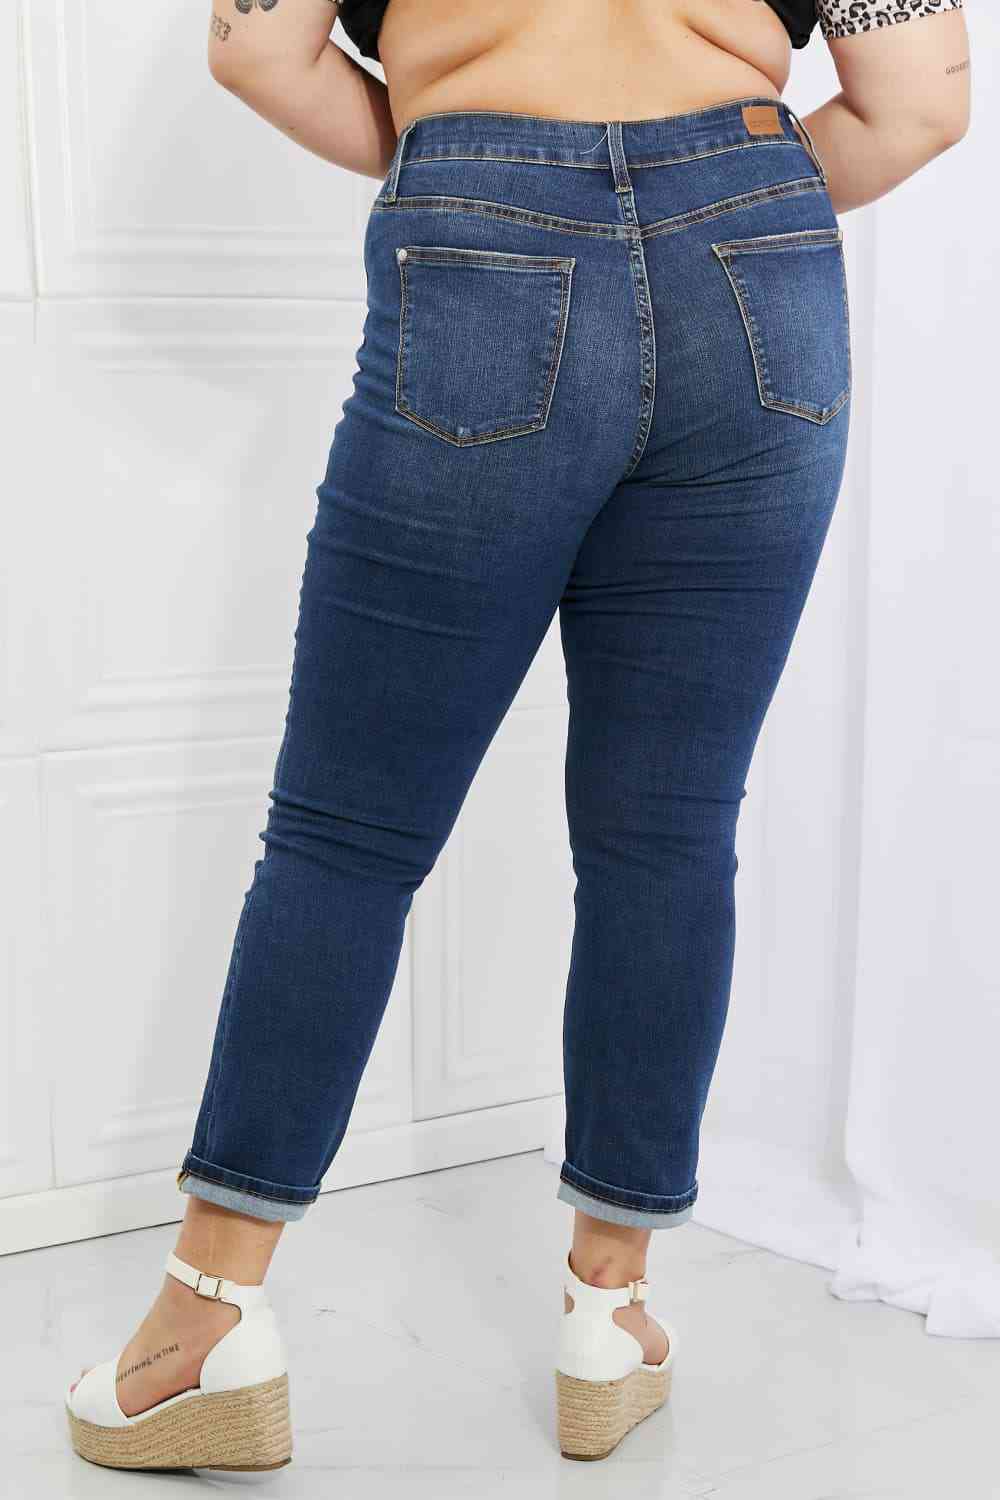 Judy Blue Crystal Full Size High Waisted Cuffed Boyfriend Jeans - U Moody